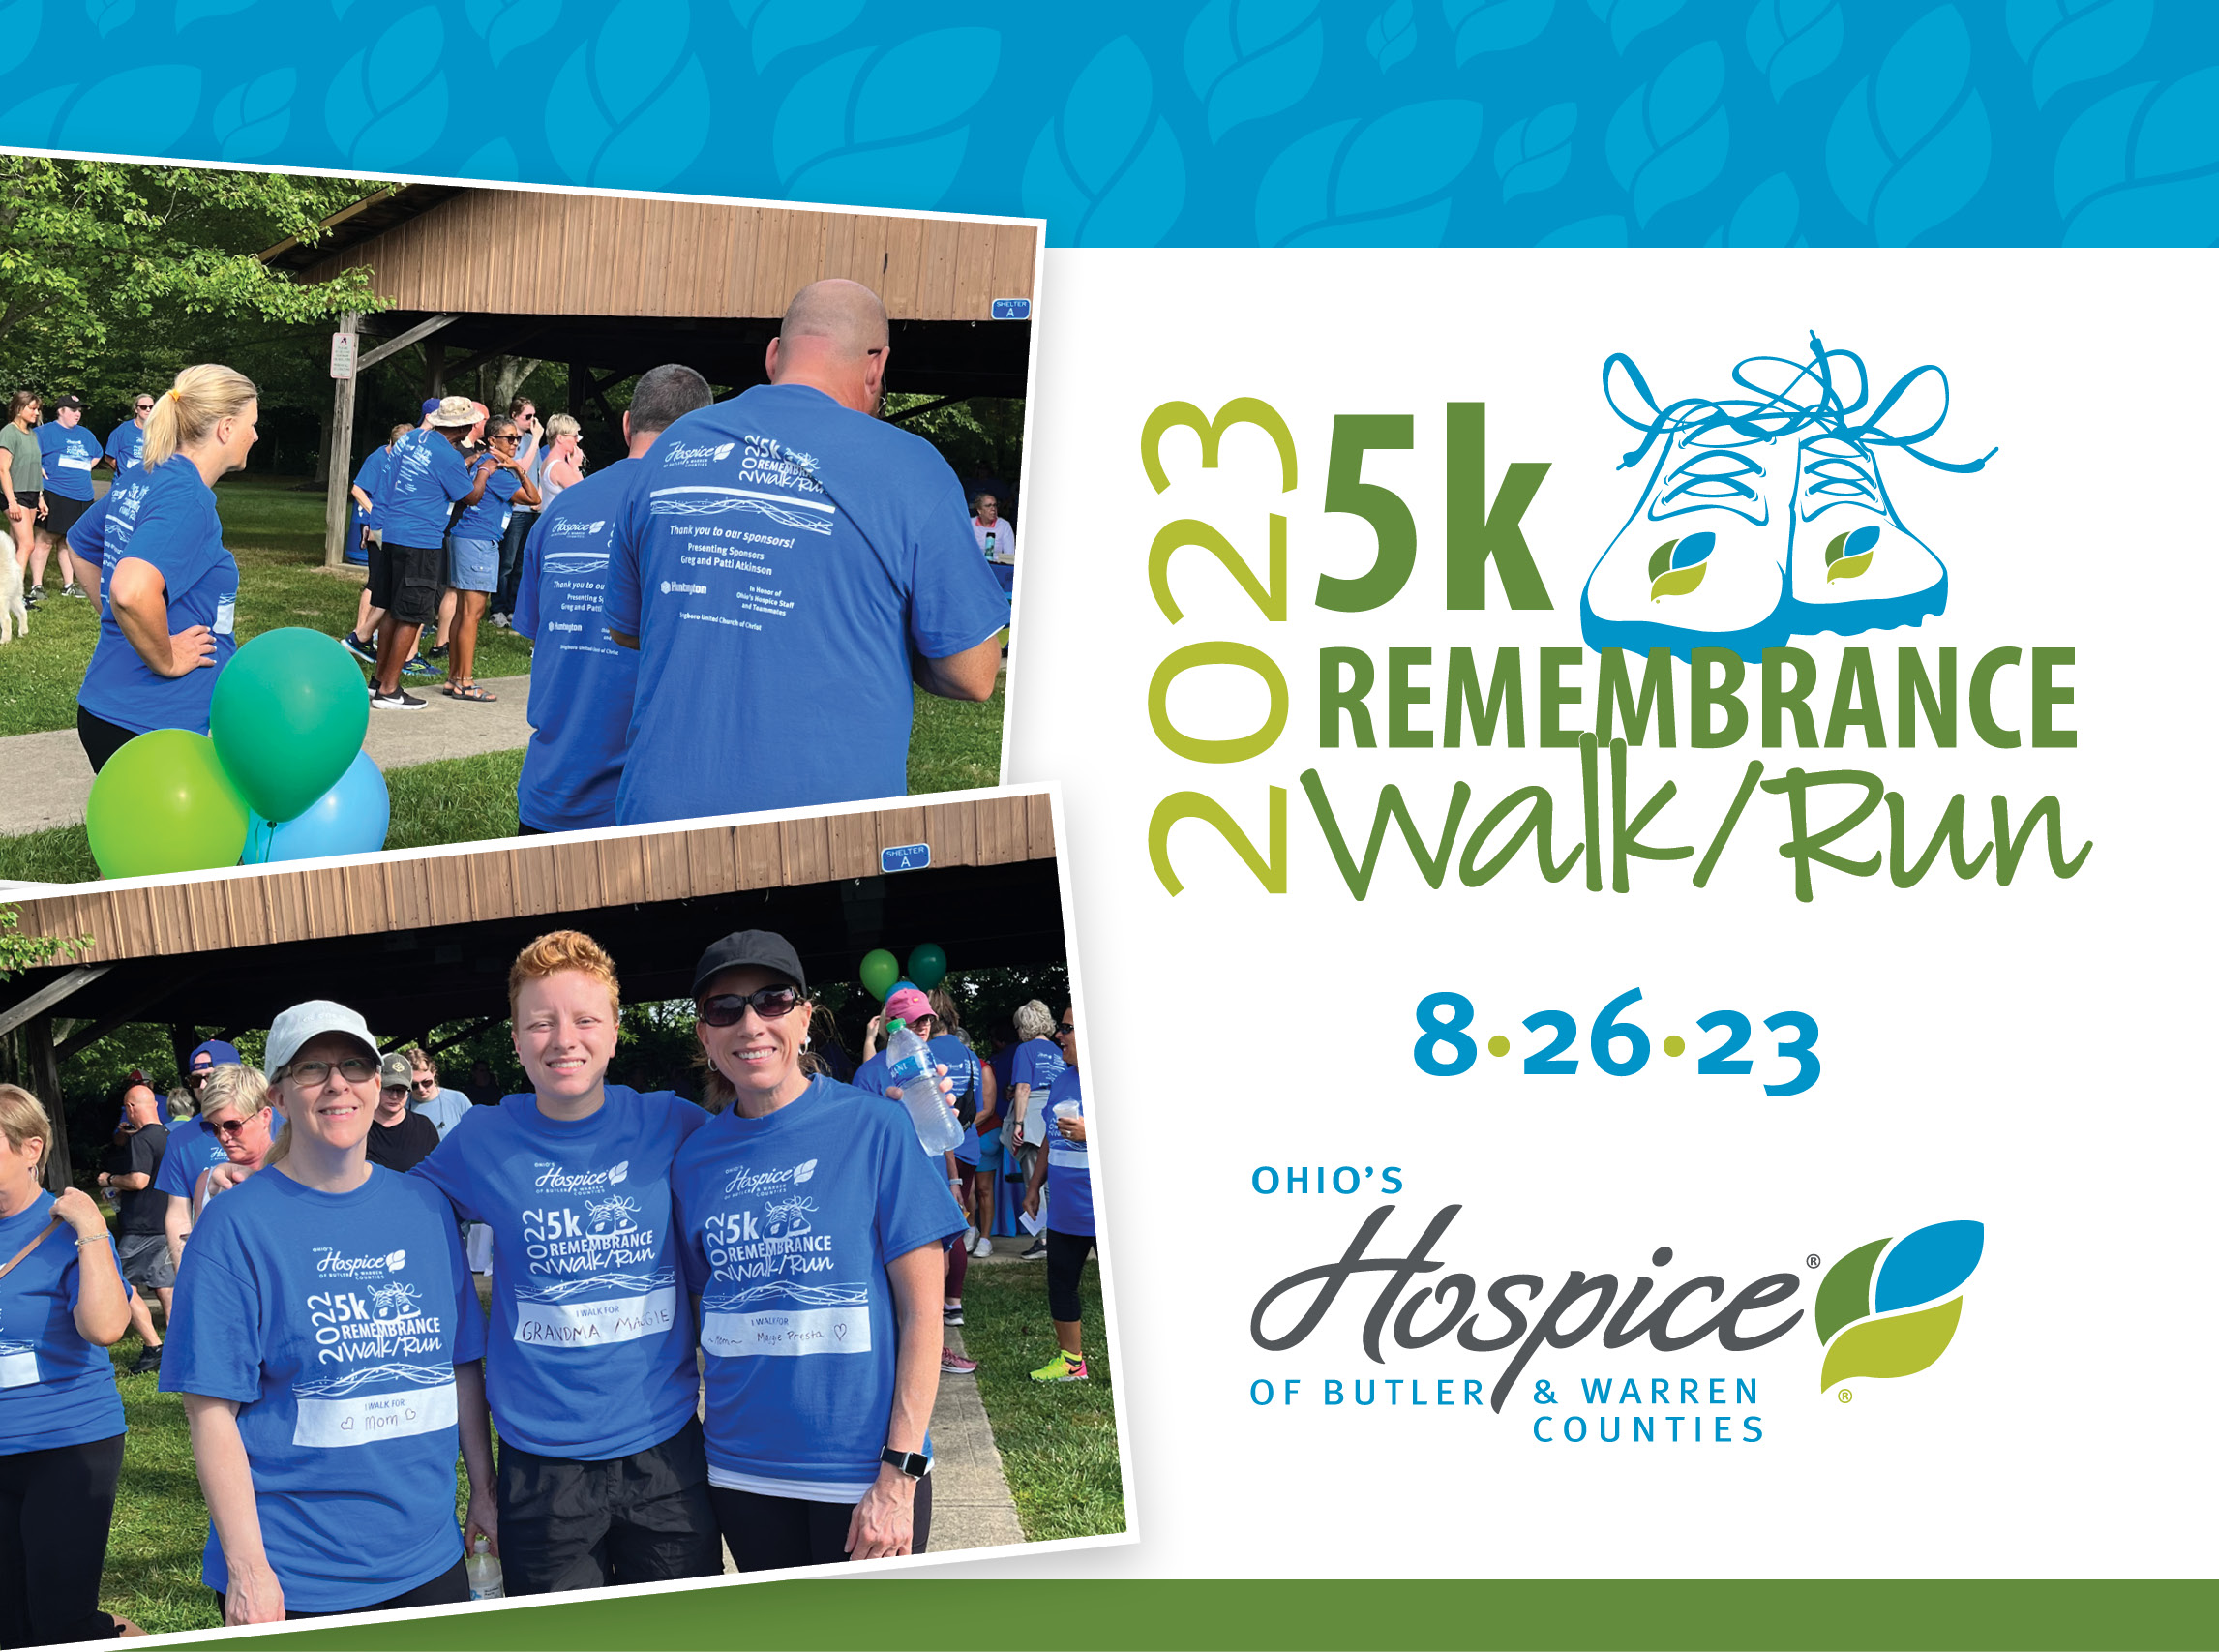 Ohio's Hospice of Butler & Warren Counties 2023 5k Remembrance Walk/Run 8.26.23